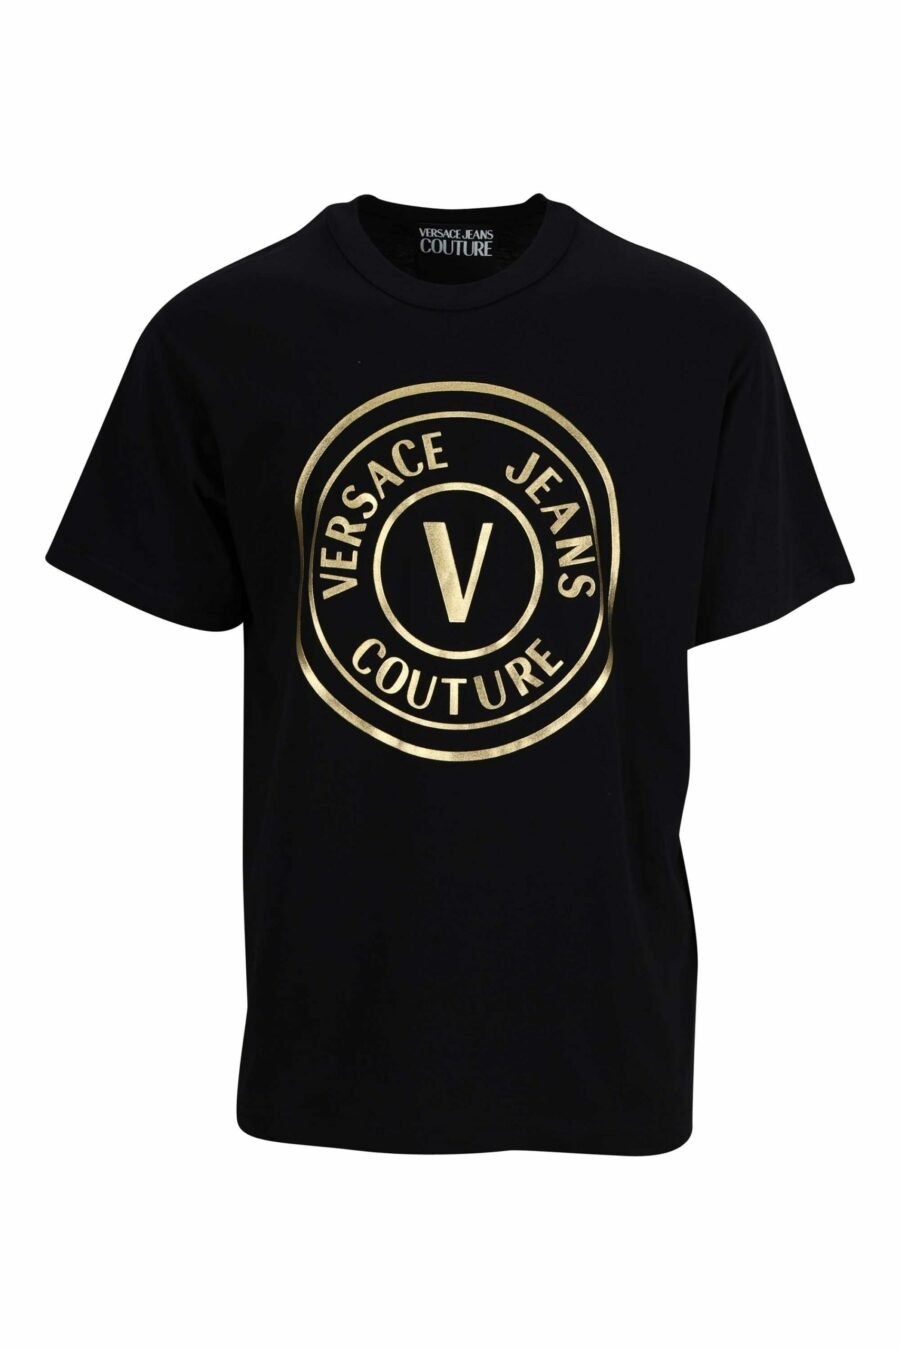 T-shirt preta com "emblema" maxilogo circular dourado - 8052019338058 scaled